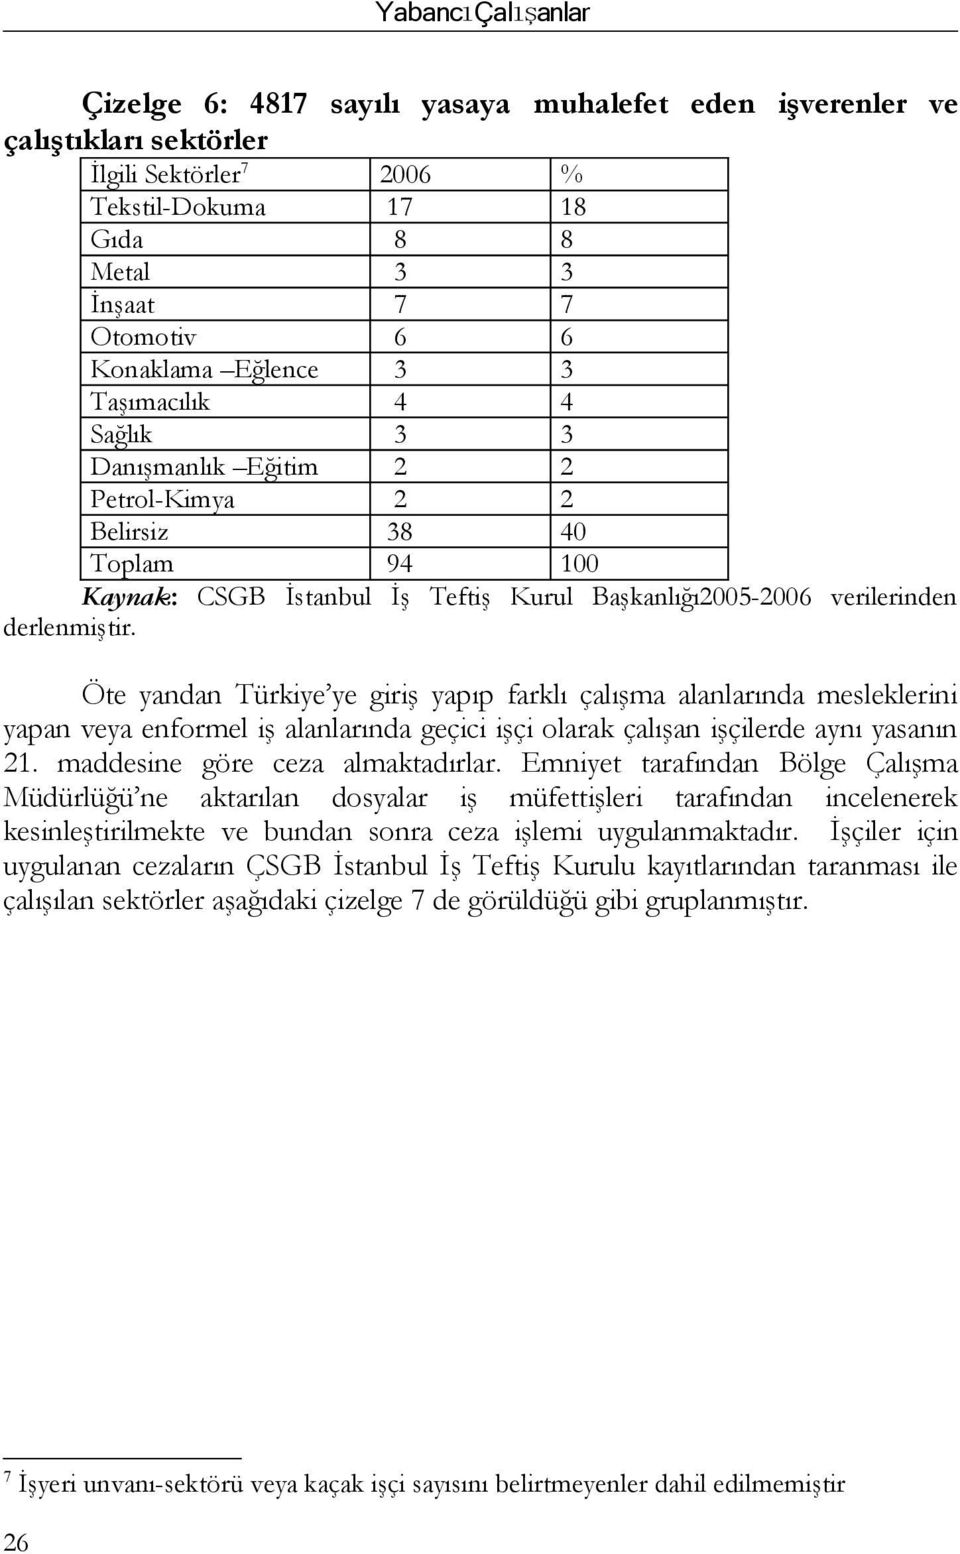 Öte yandan Türkiye ye giriş yapıp farklı çalışma alında mesleklerini yapan veya enformel iş alında geçici işçi olarak çalışan işçilerde aynı yasanın 21. maddesine göre ceza almaktadırlar.